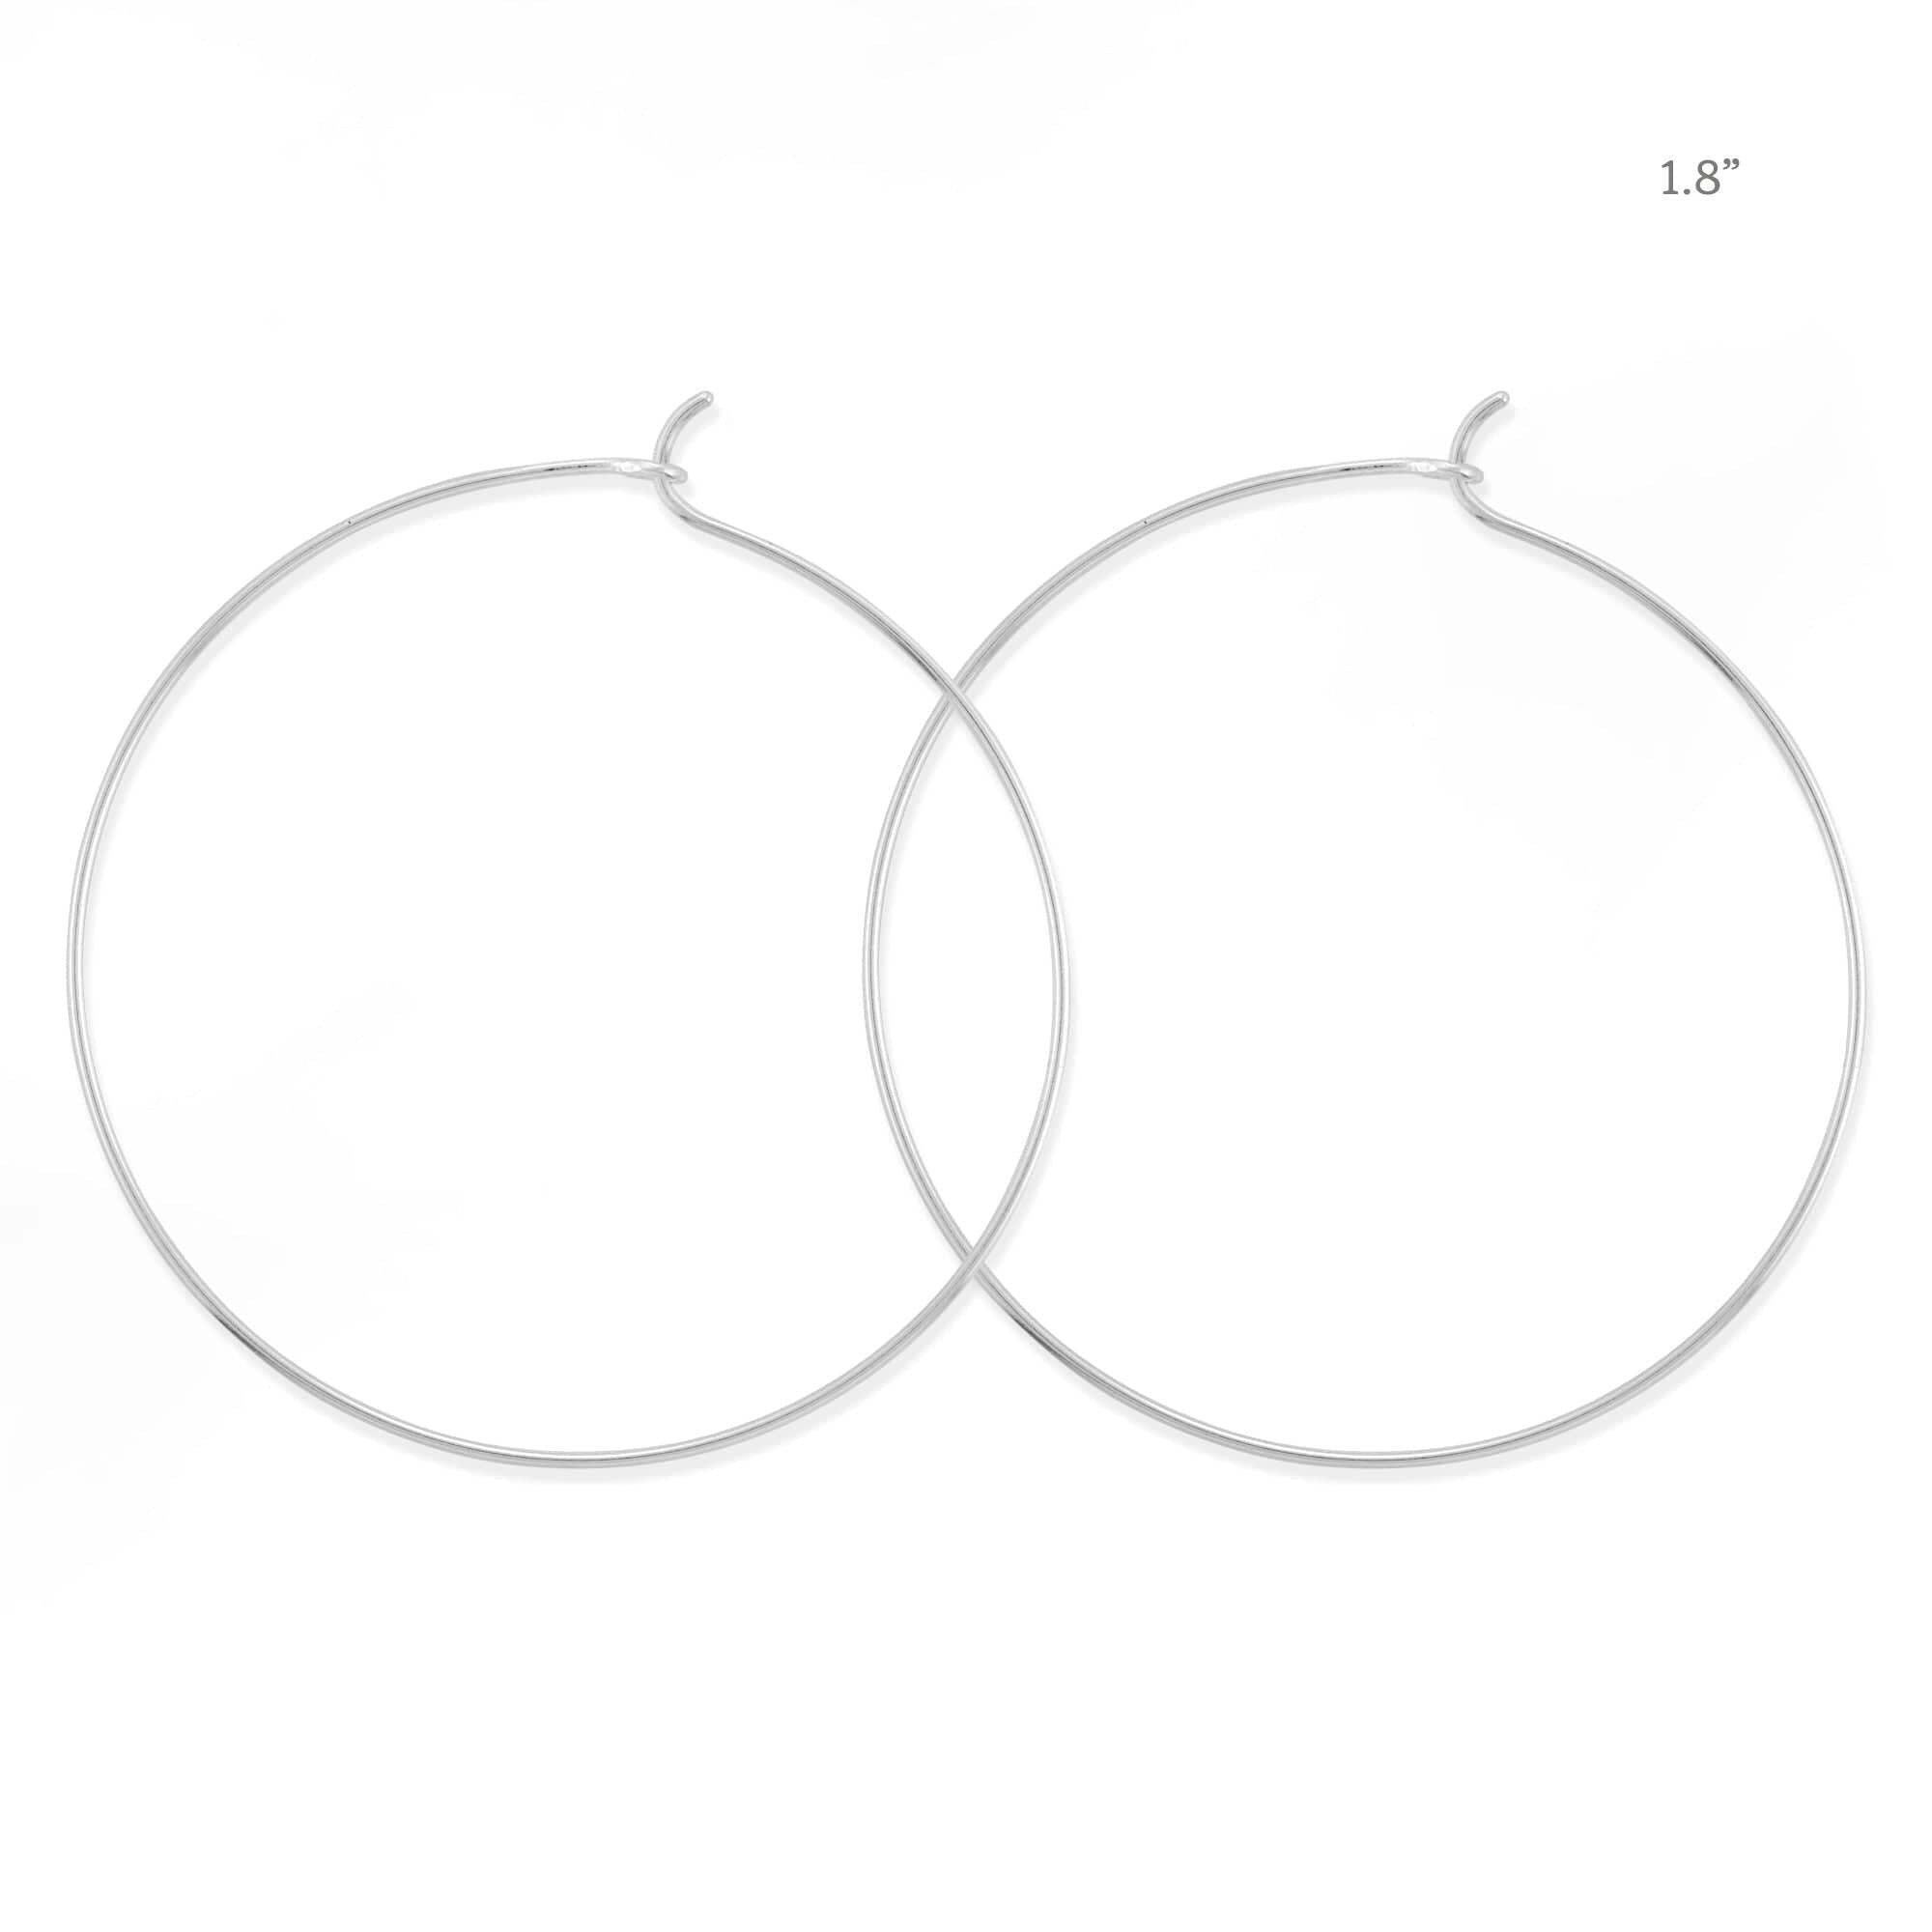 Boma Jewelry Earrings Sterling Silver / 1.8" Aiko Hoop Earrings